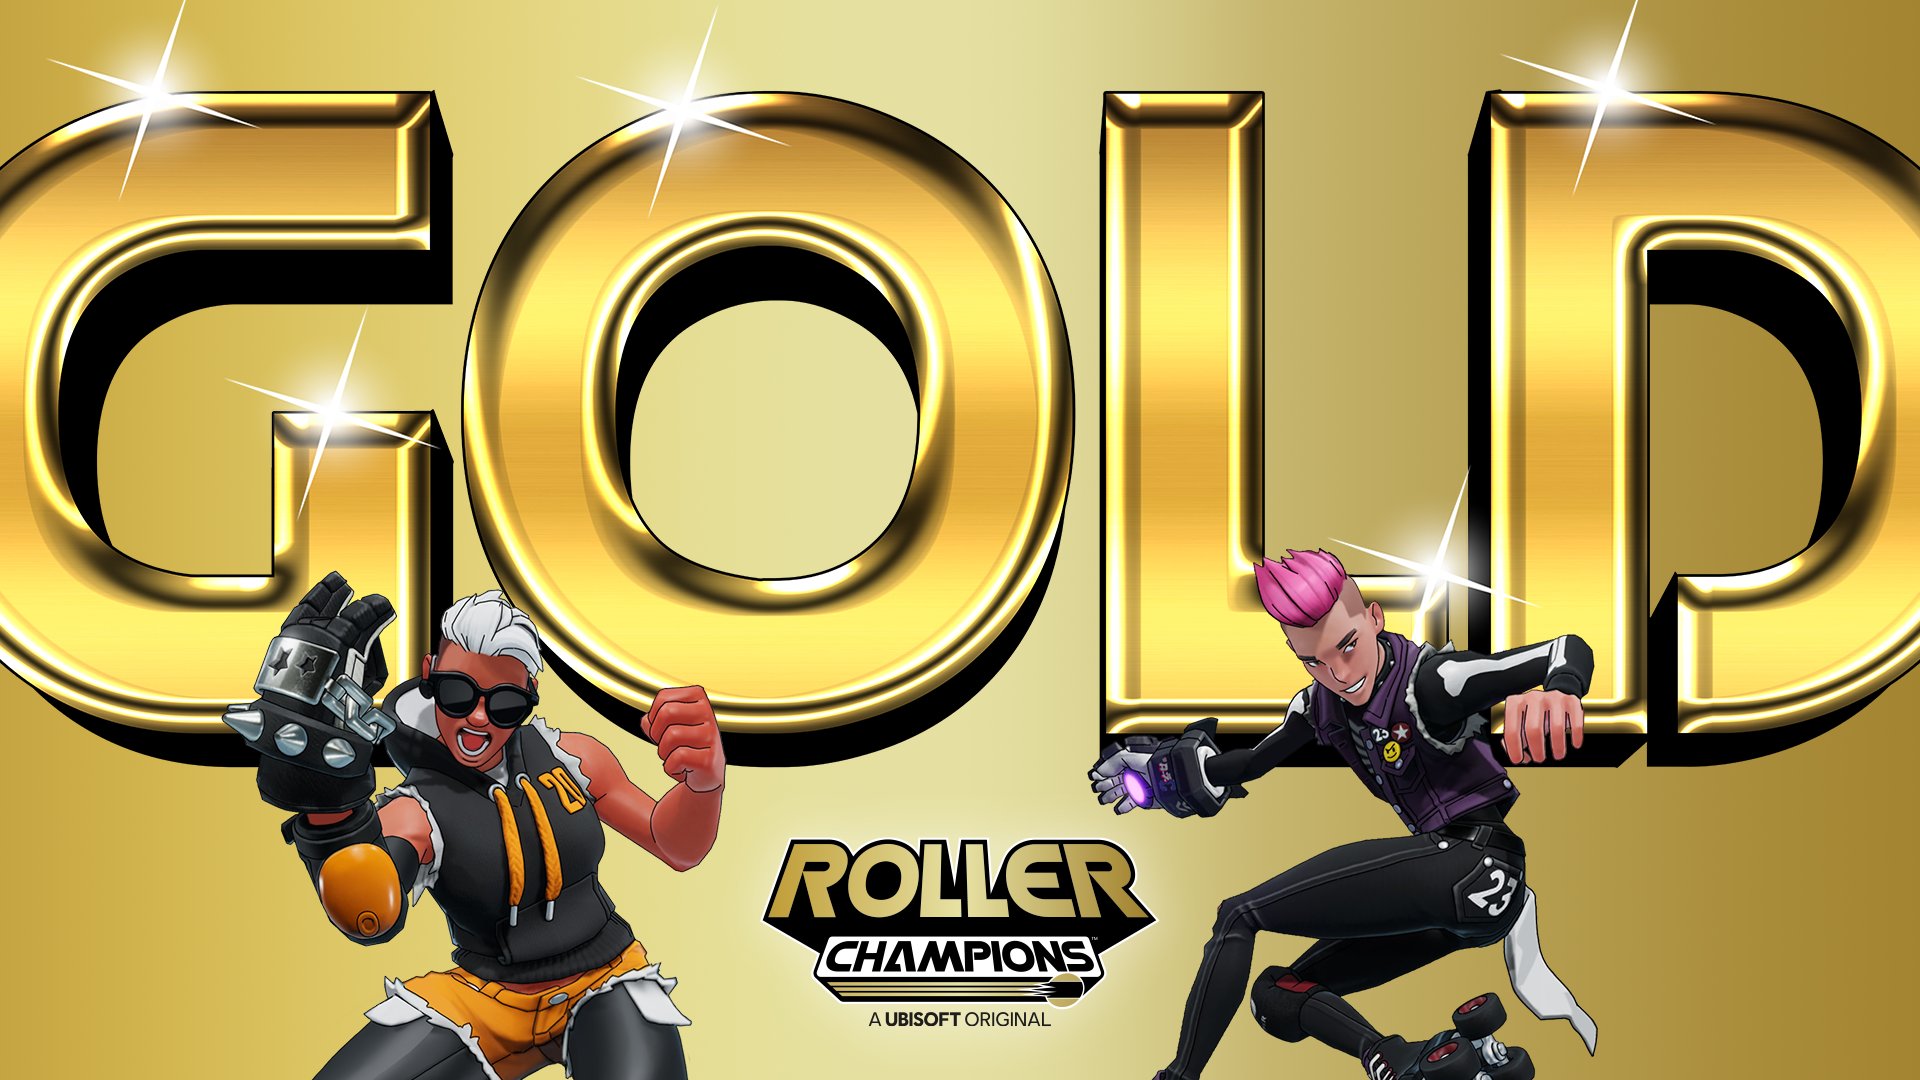 Долгожданная игра Roller Champions от Ubisoft "ушла на золото"